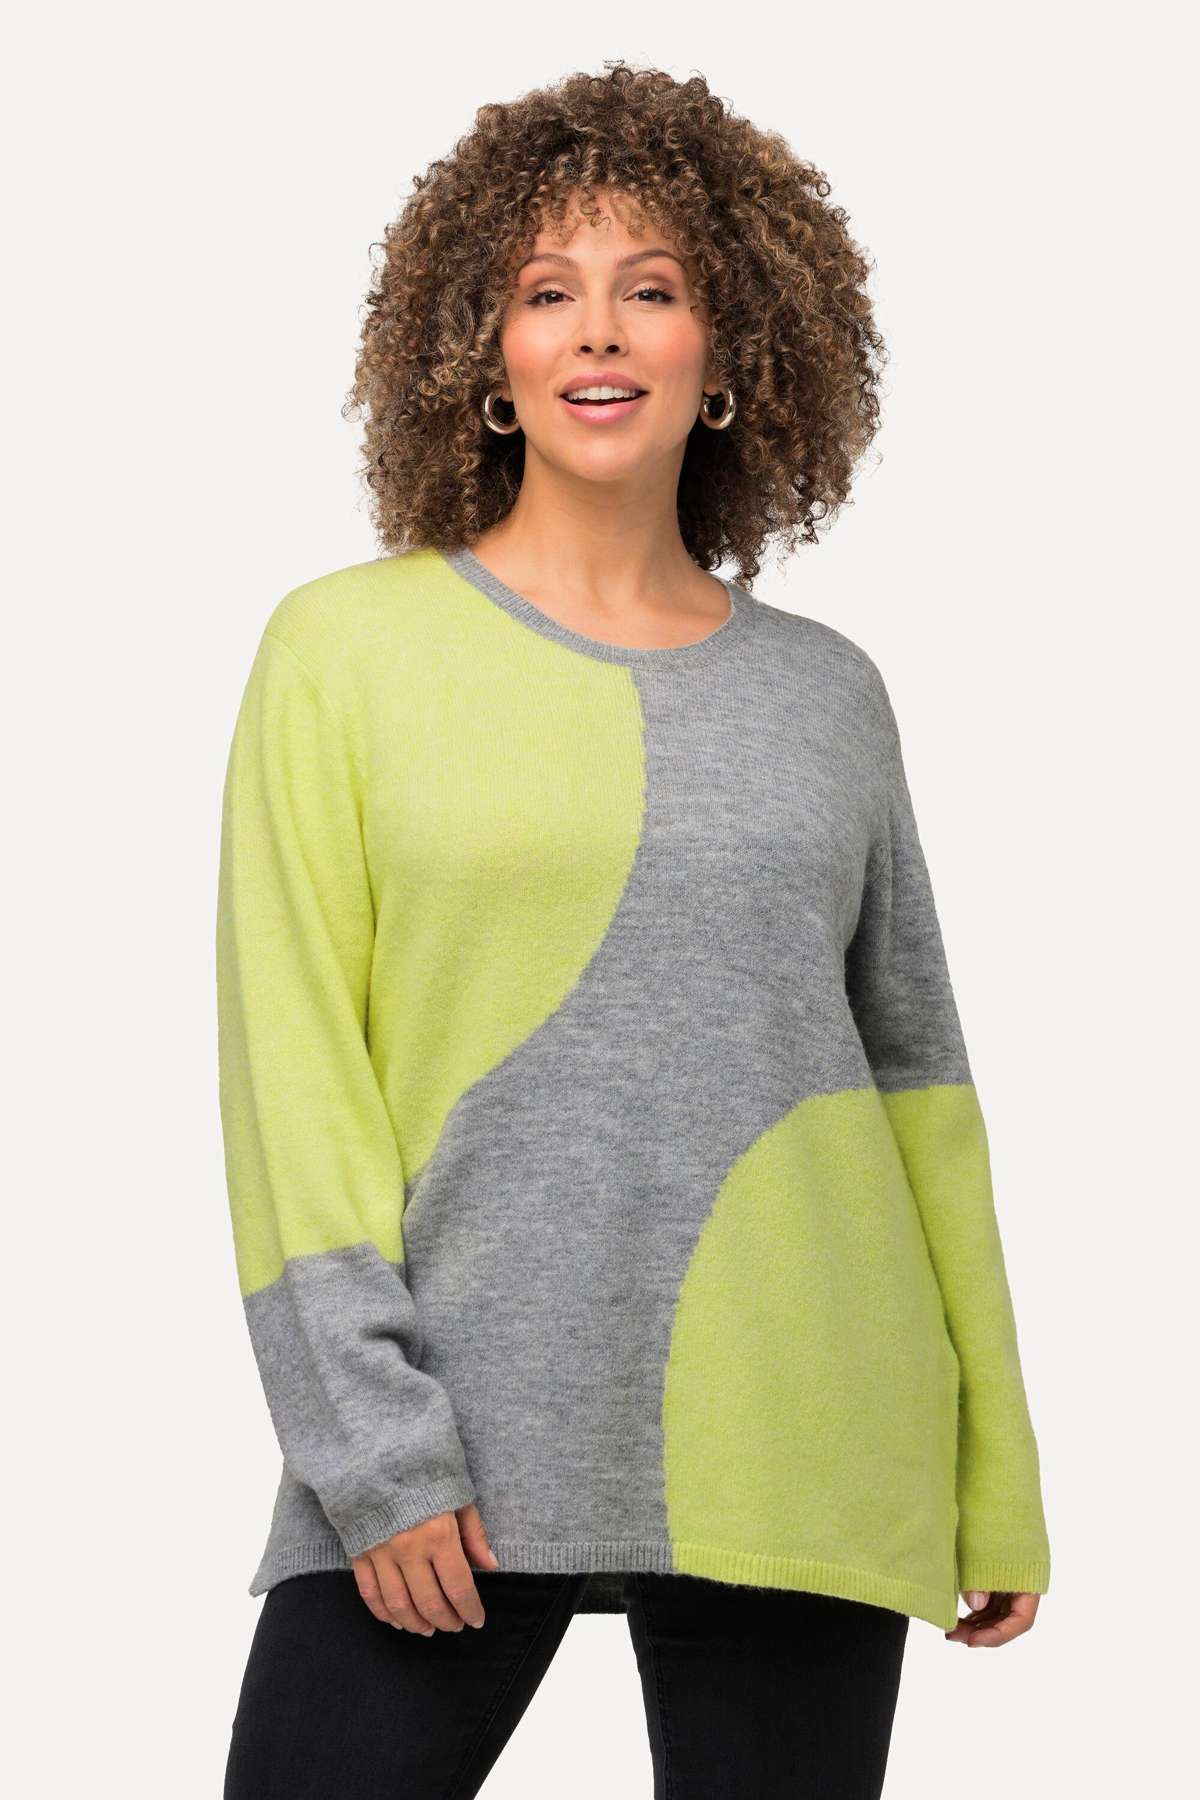 Вязаный свитер, пуловер с колор-блоками, круглым вырезом и длинными рукавами